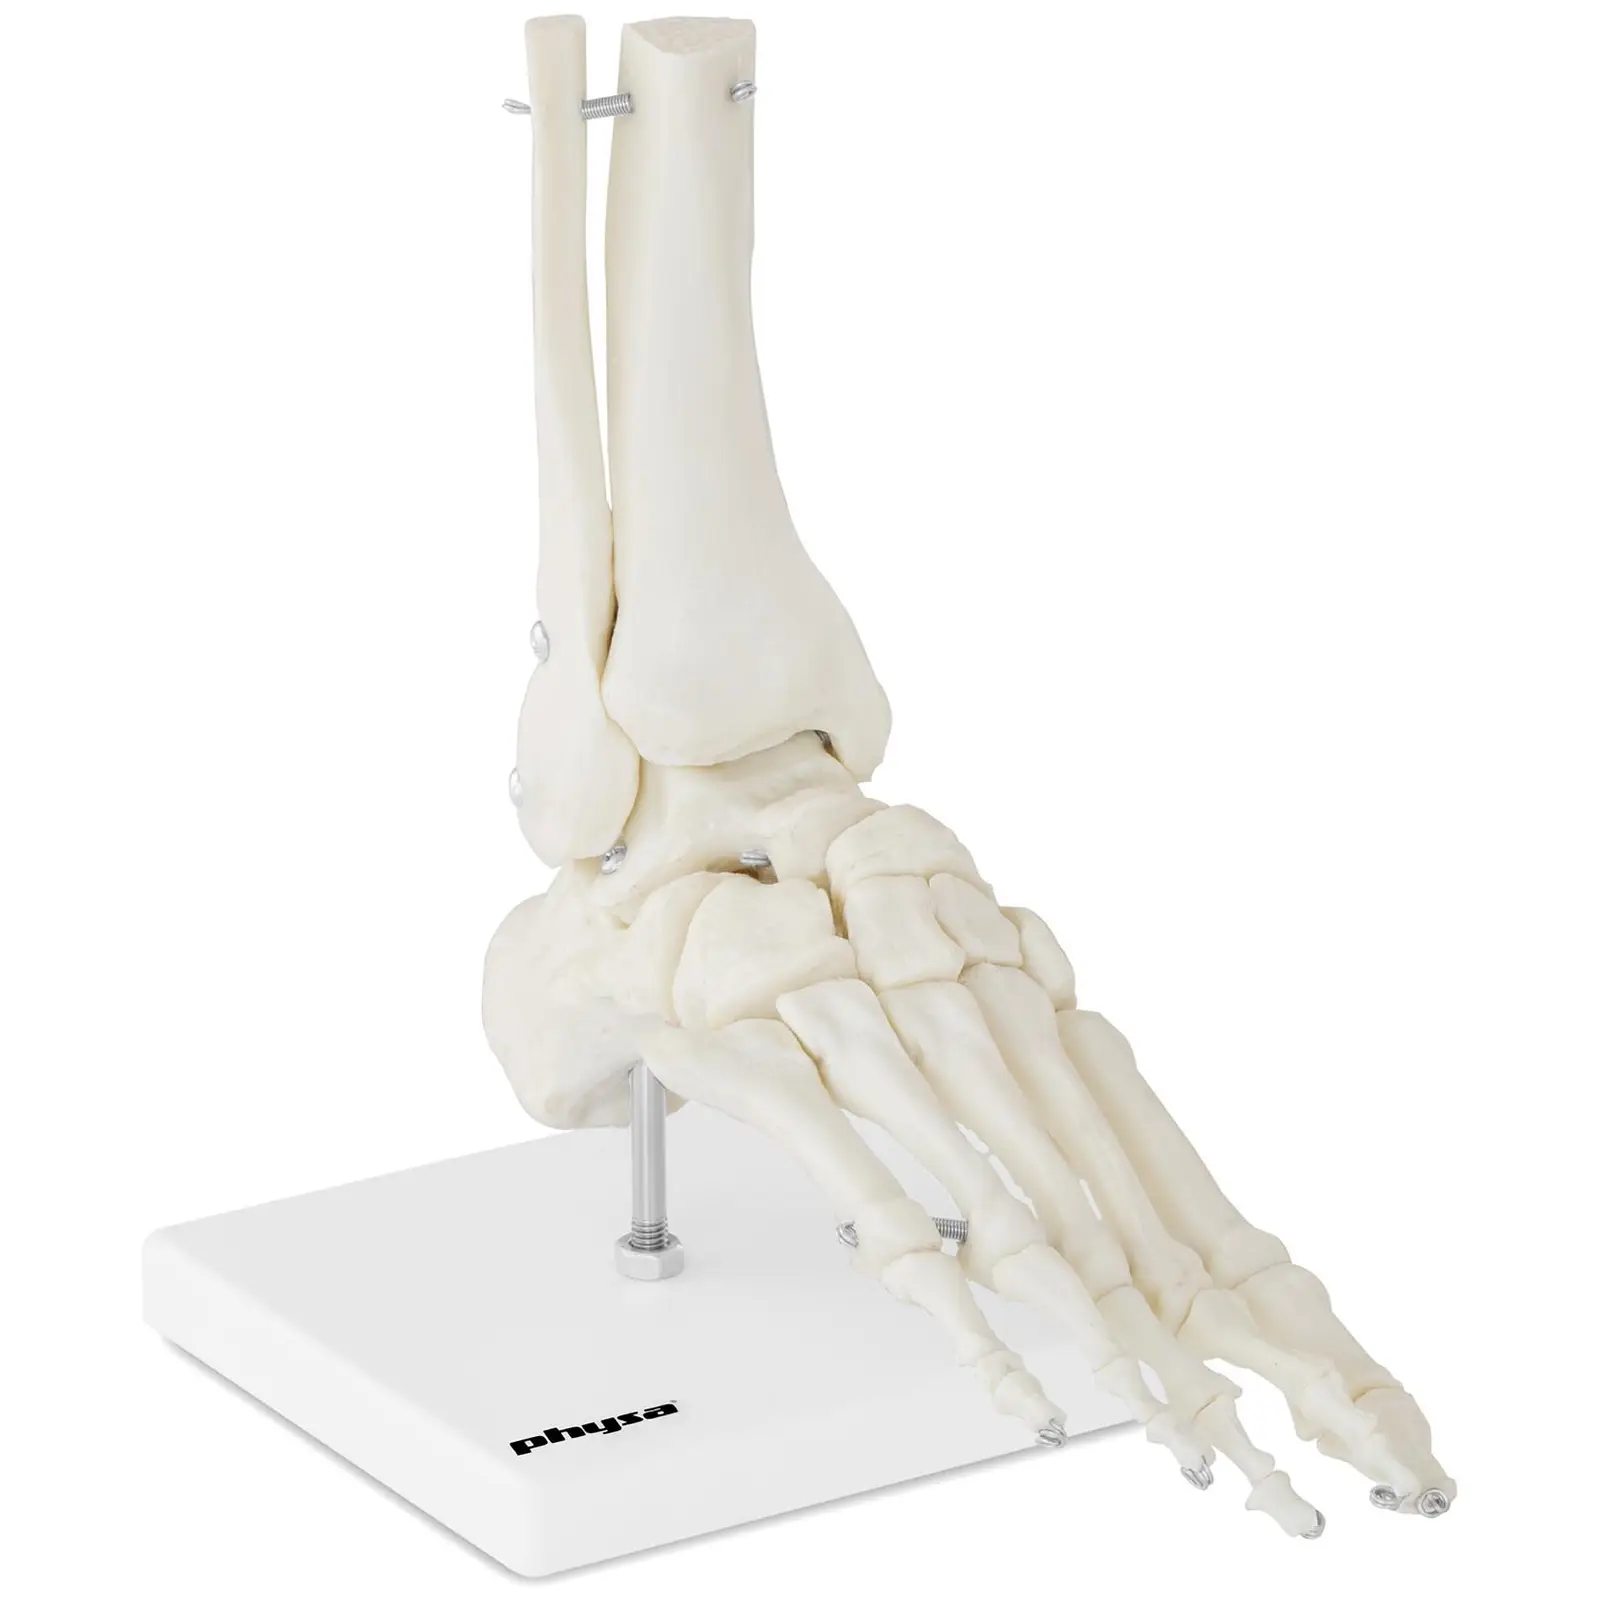 Anatomisch model skeletvoet